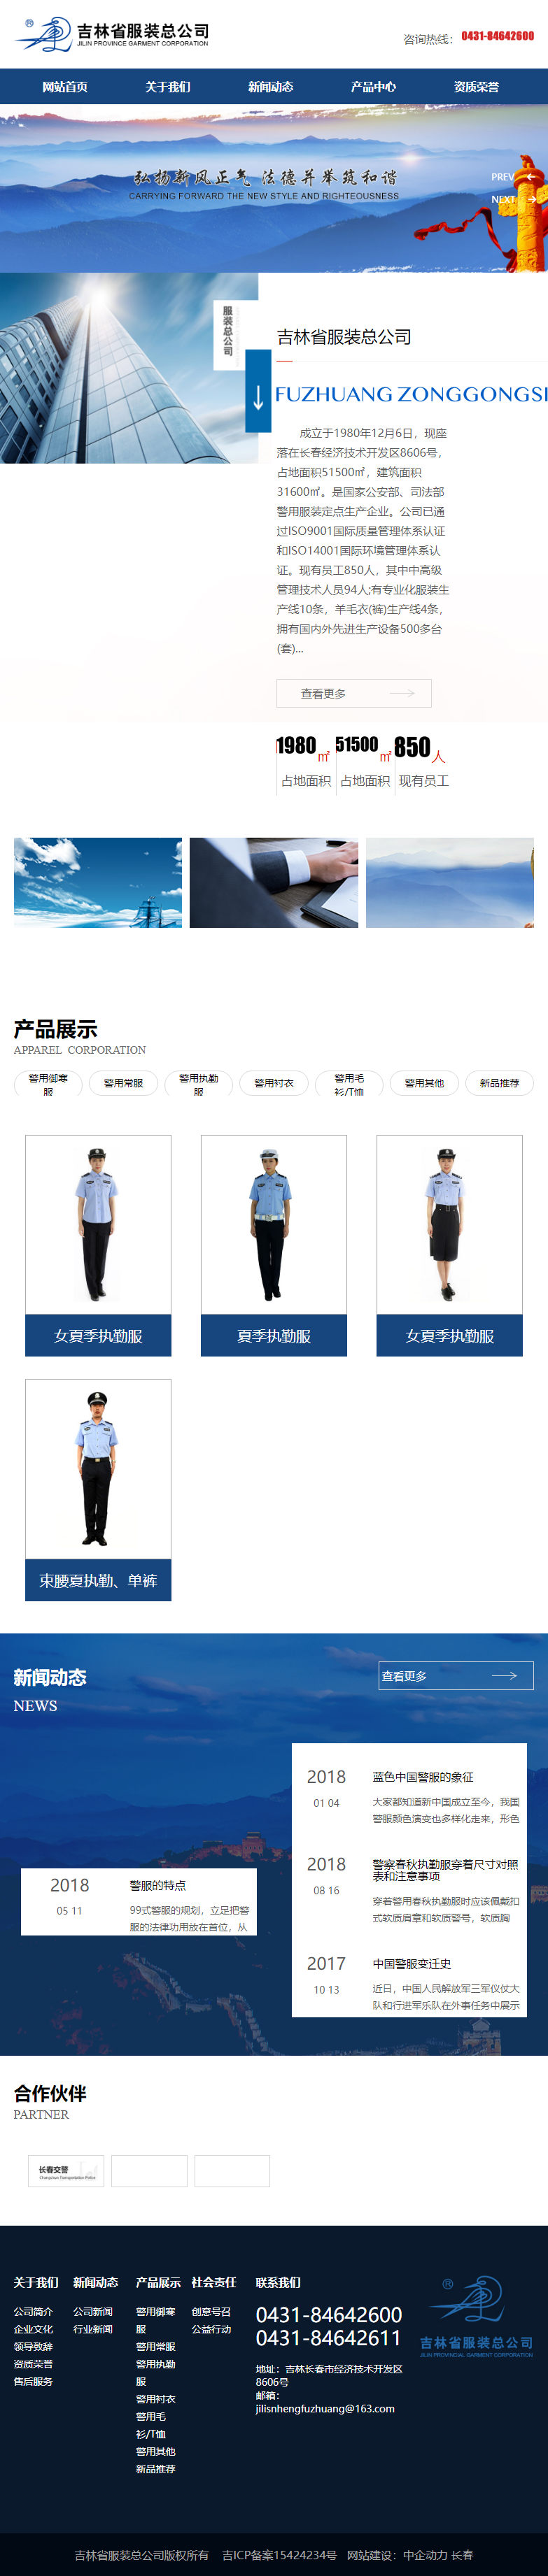 吉林省服装总公司网站案例